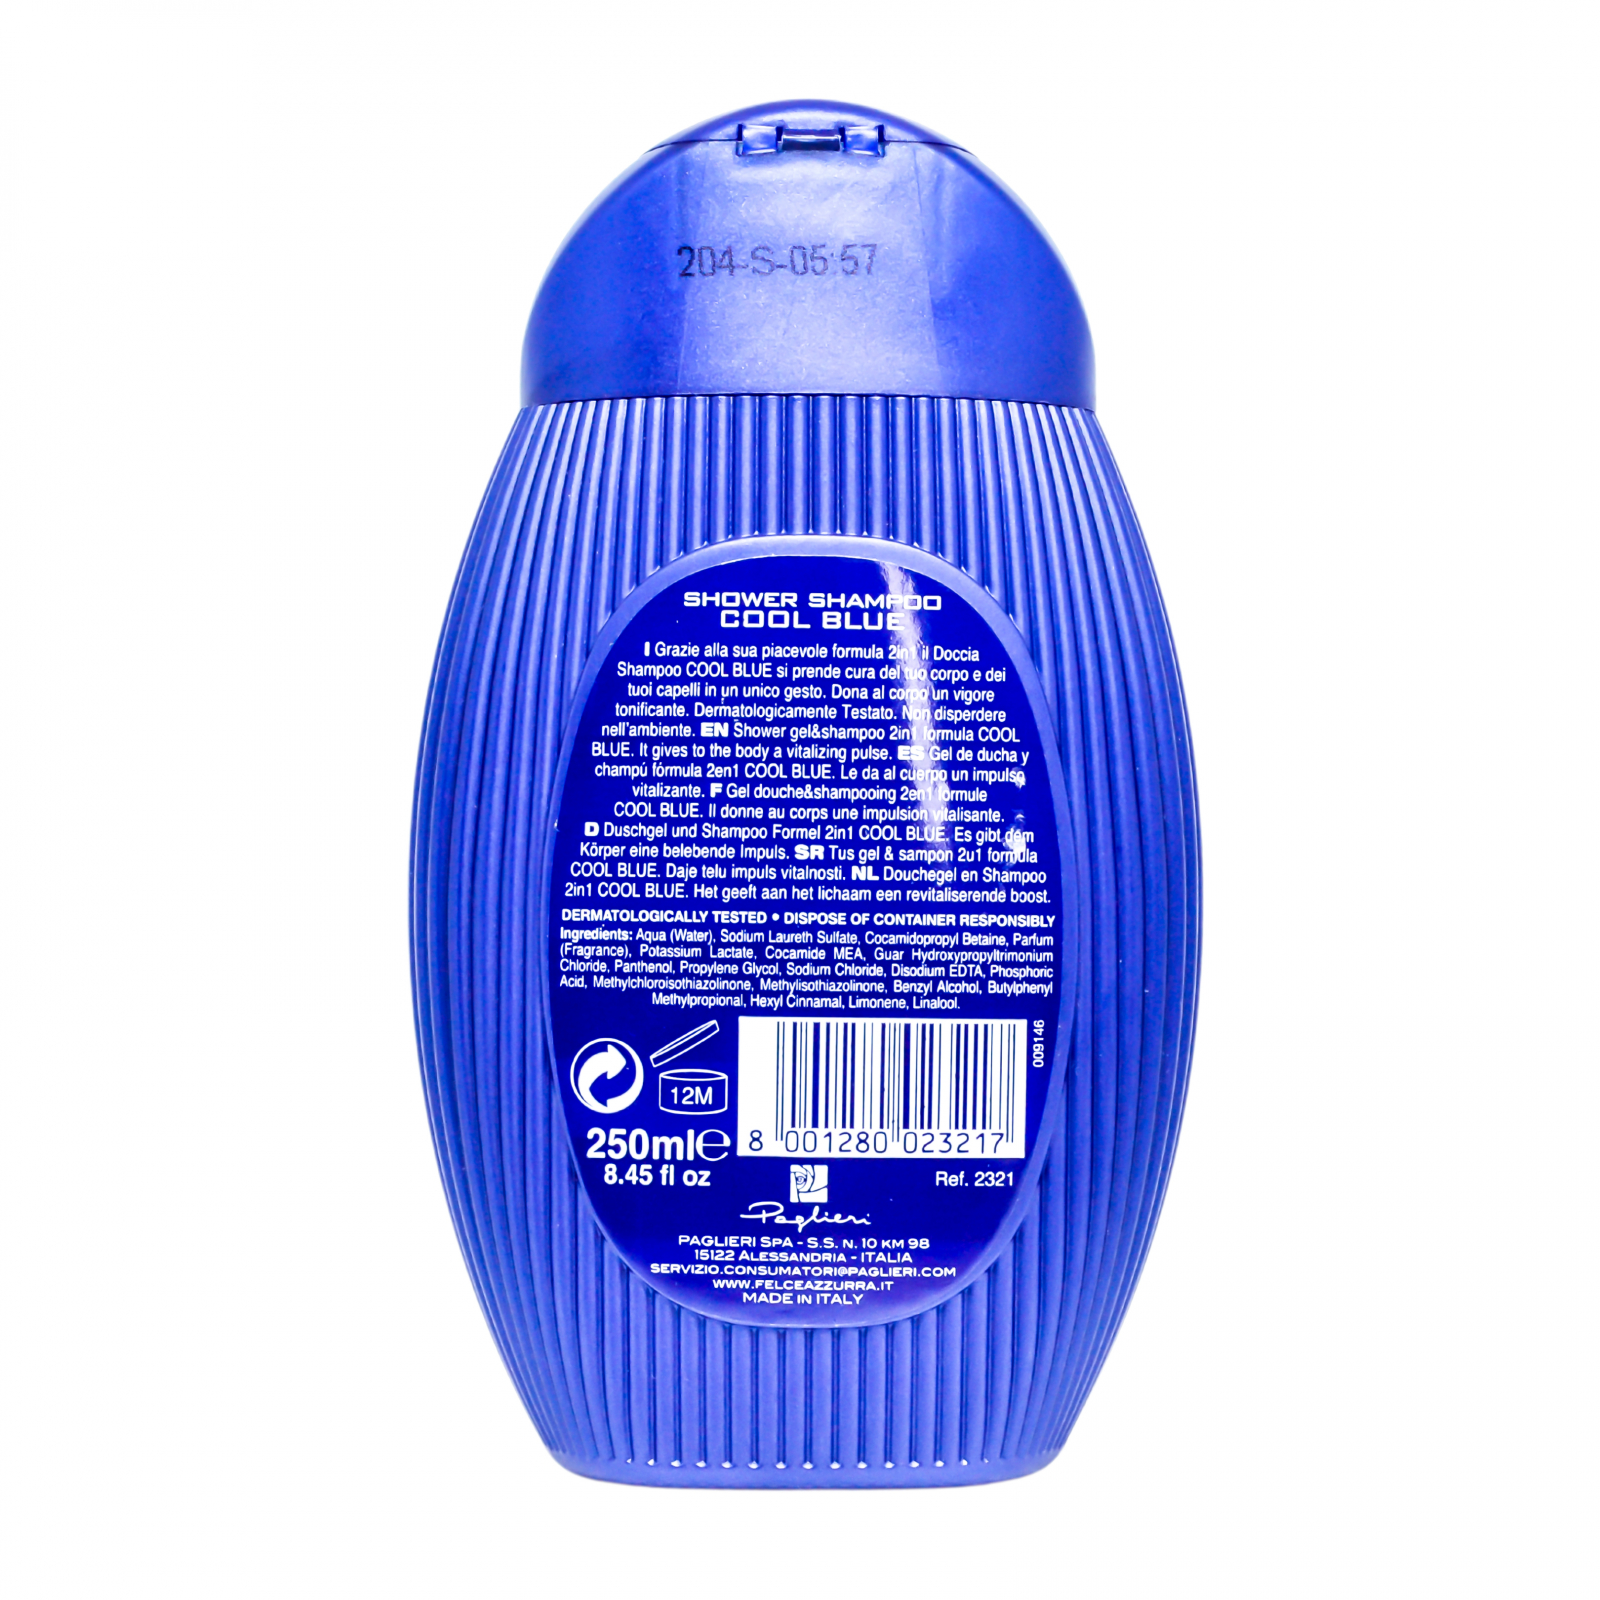 Felce Azzurra Men Shampoo and Shower Fresh Ice 250ml 8.45 fl oz